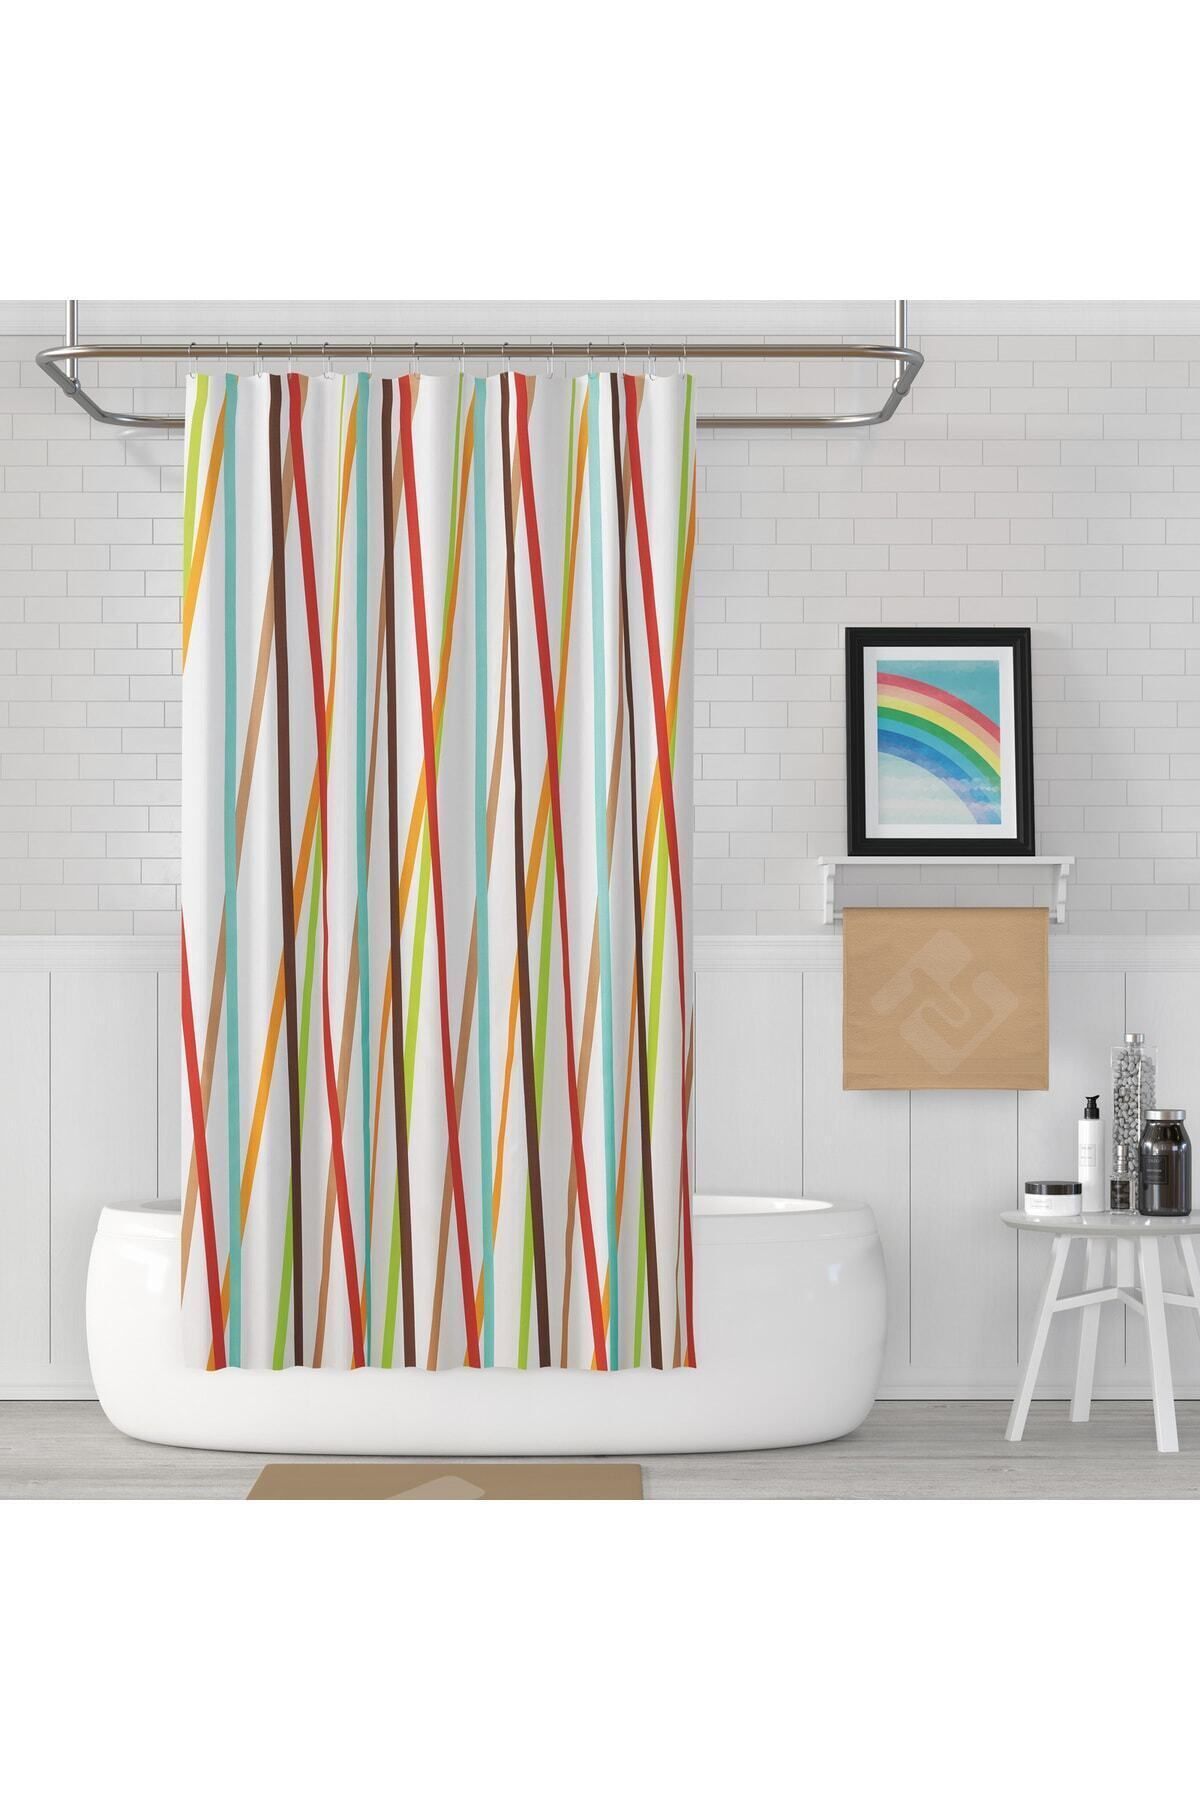 Tropikhome Banyo Perdesi Şerit Desen Yerli Üretim Duş Perdesi Plastik C-Halka Hediye 180x200cm Banyo Perdeleri